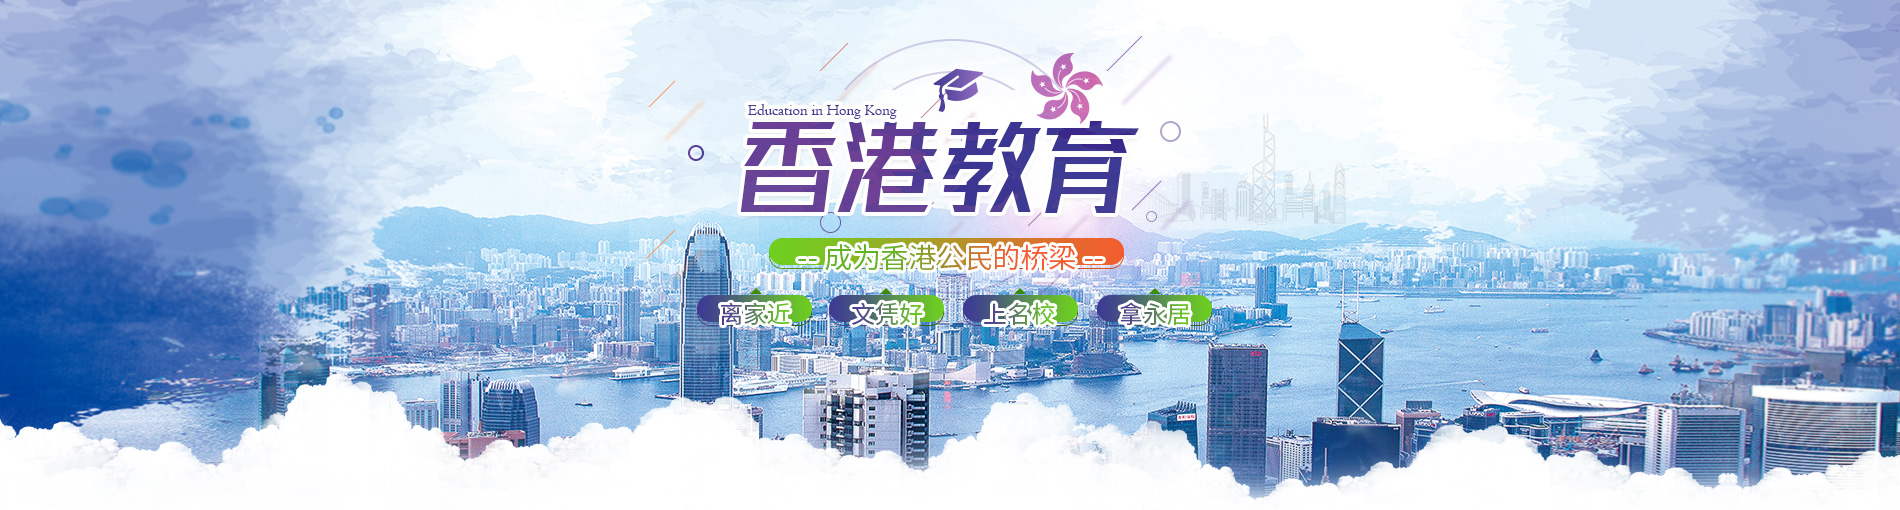 香港教育项目_邦海外